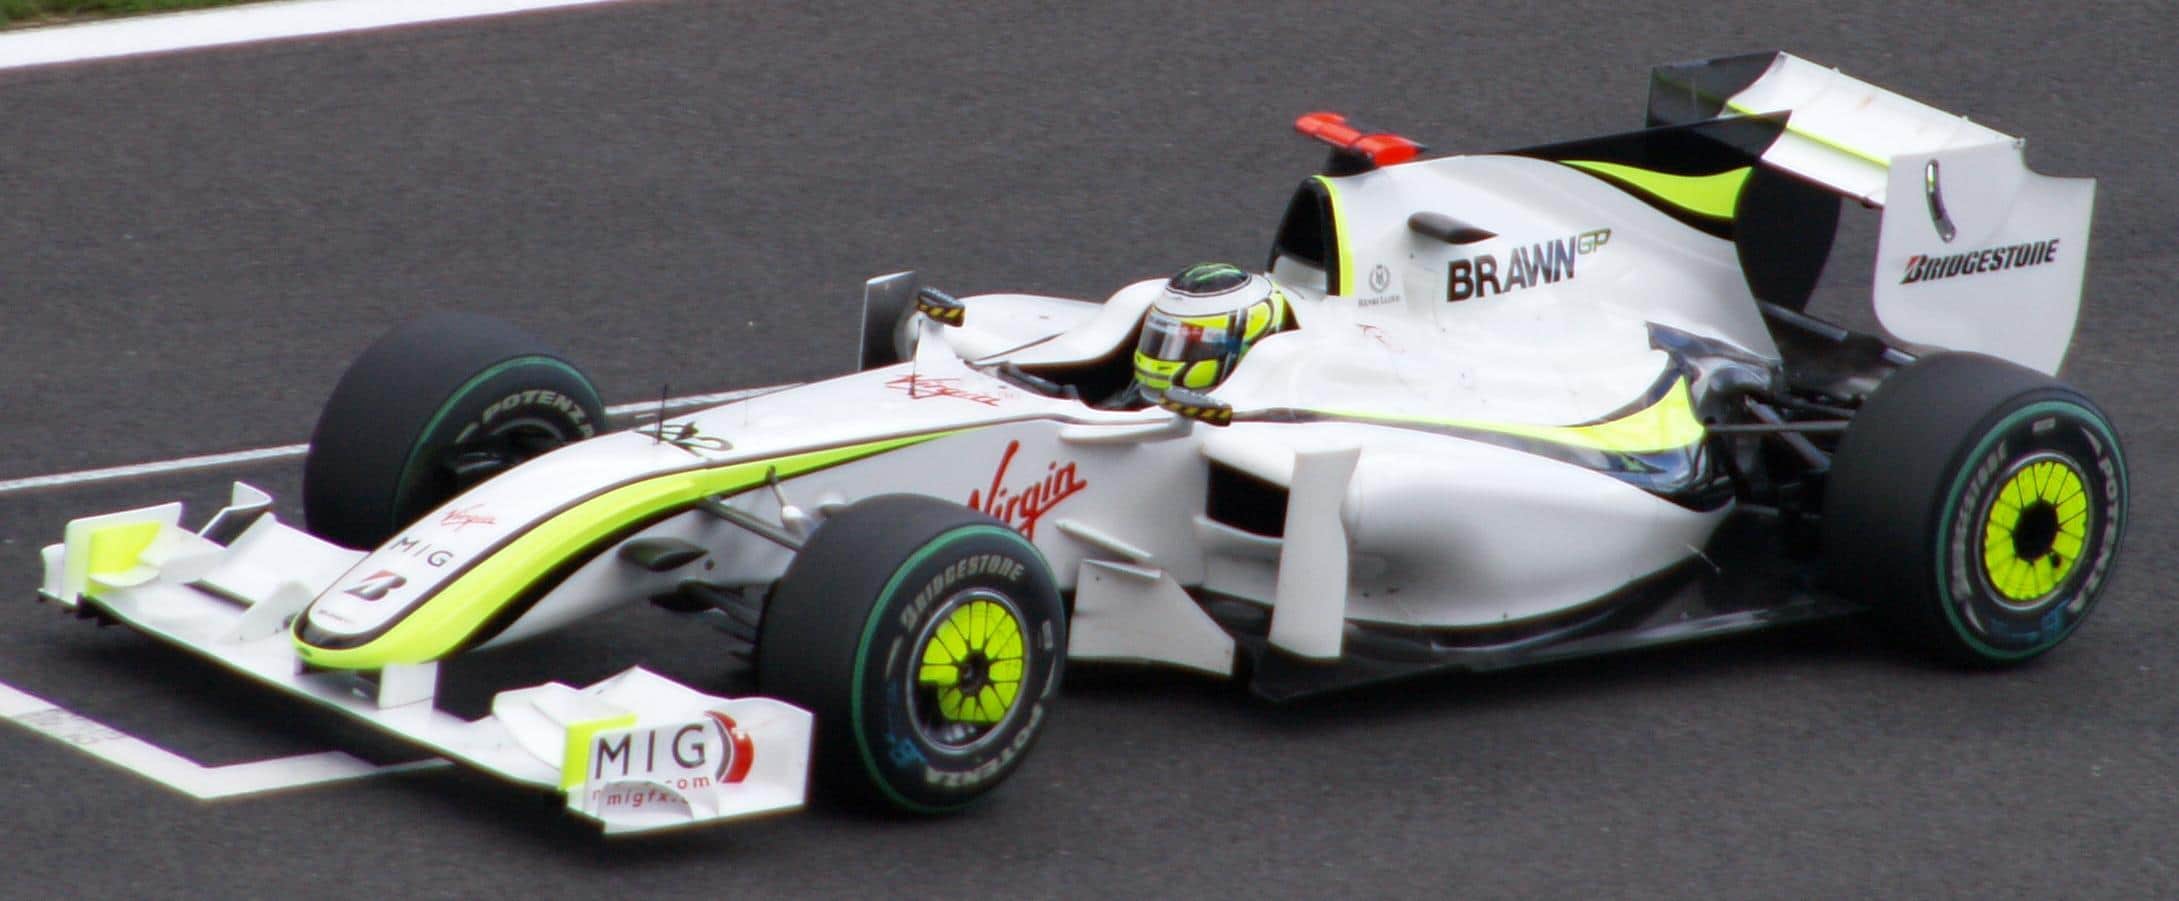 Jenson Button 2009 Brawn GP car